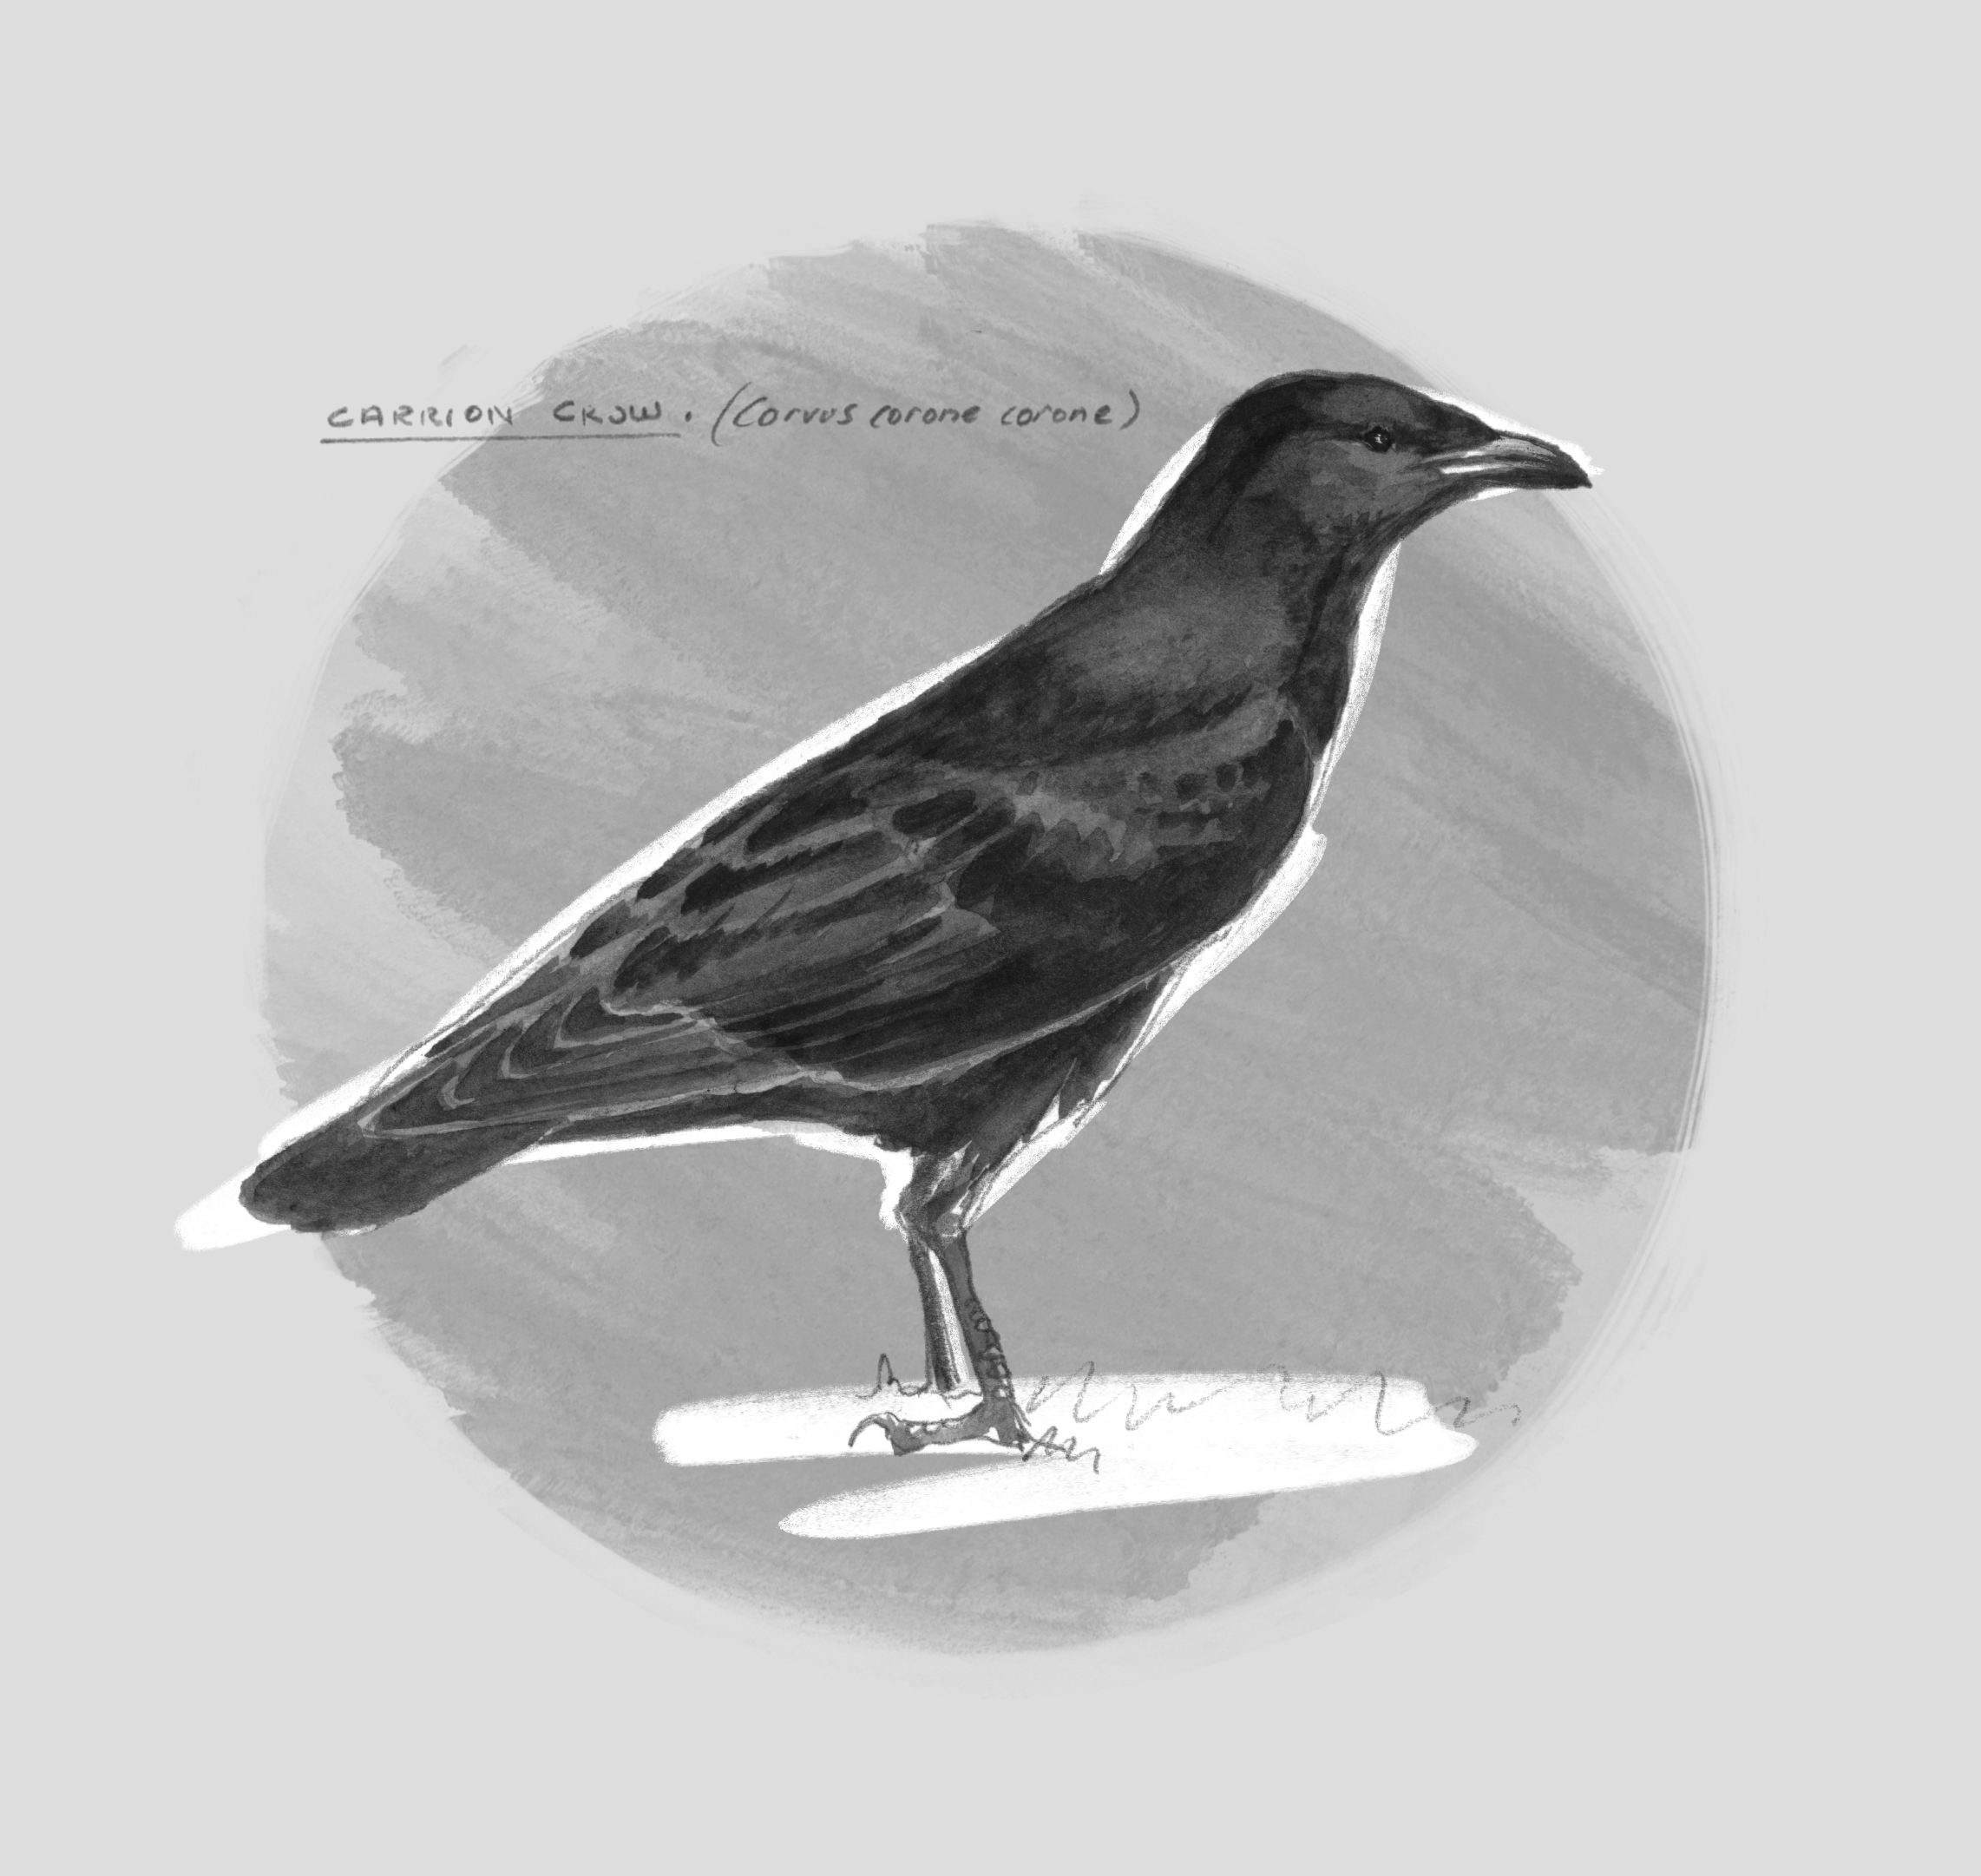 Corvus corone Ansichtskarte: Rabenkrähe carrion crow ein schönes Porträt